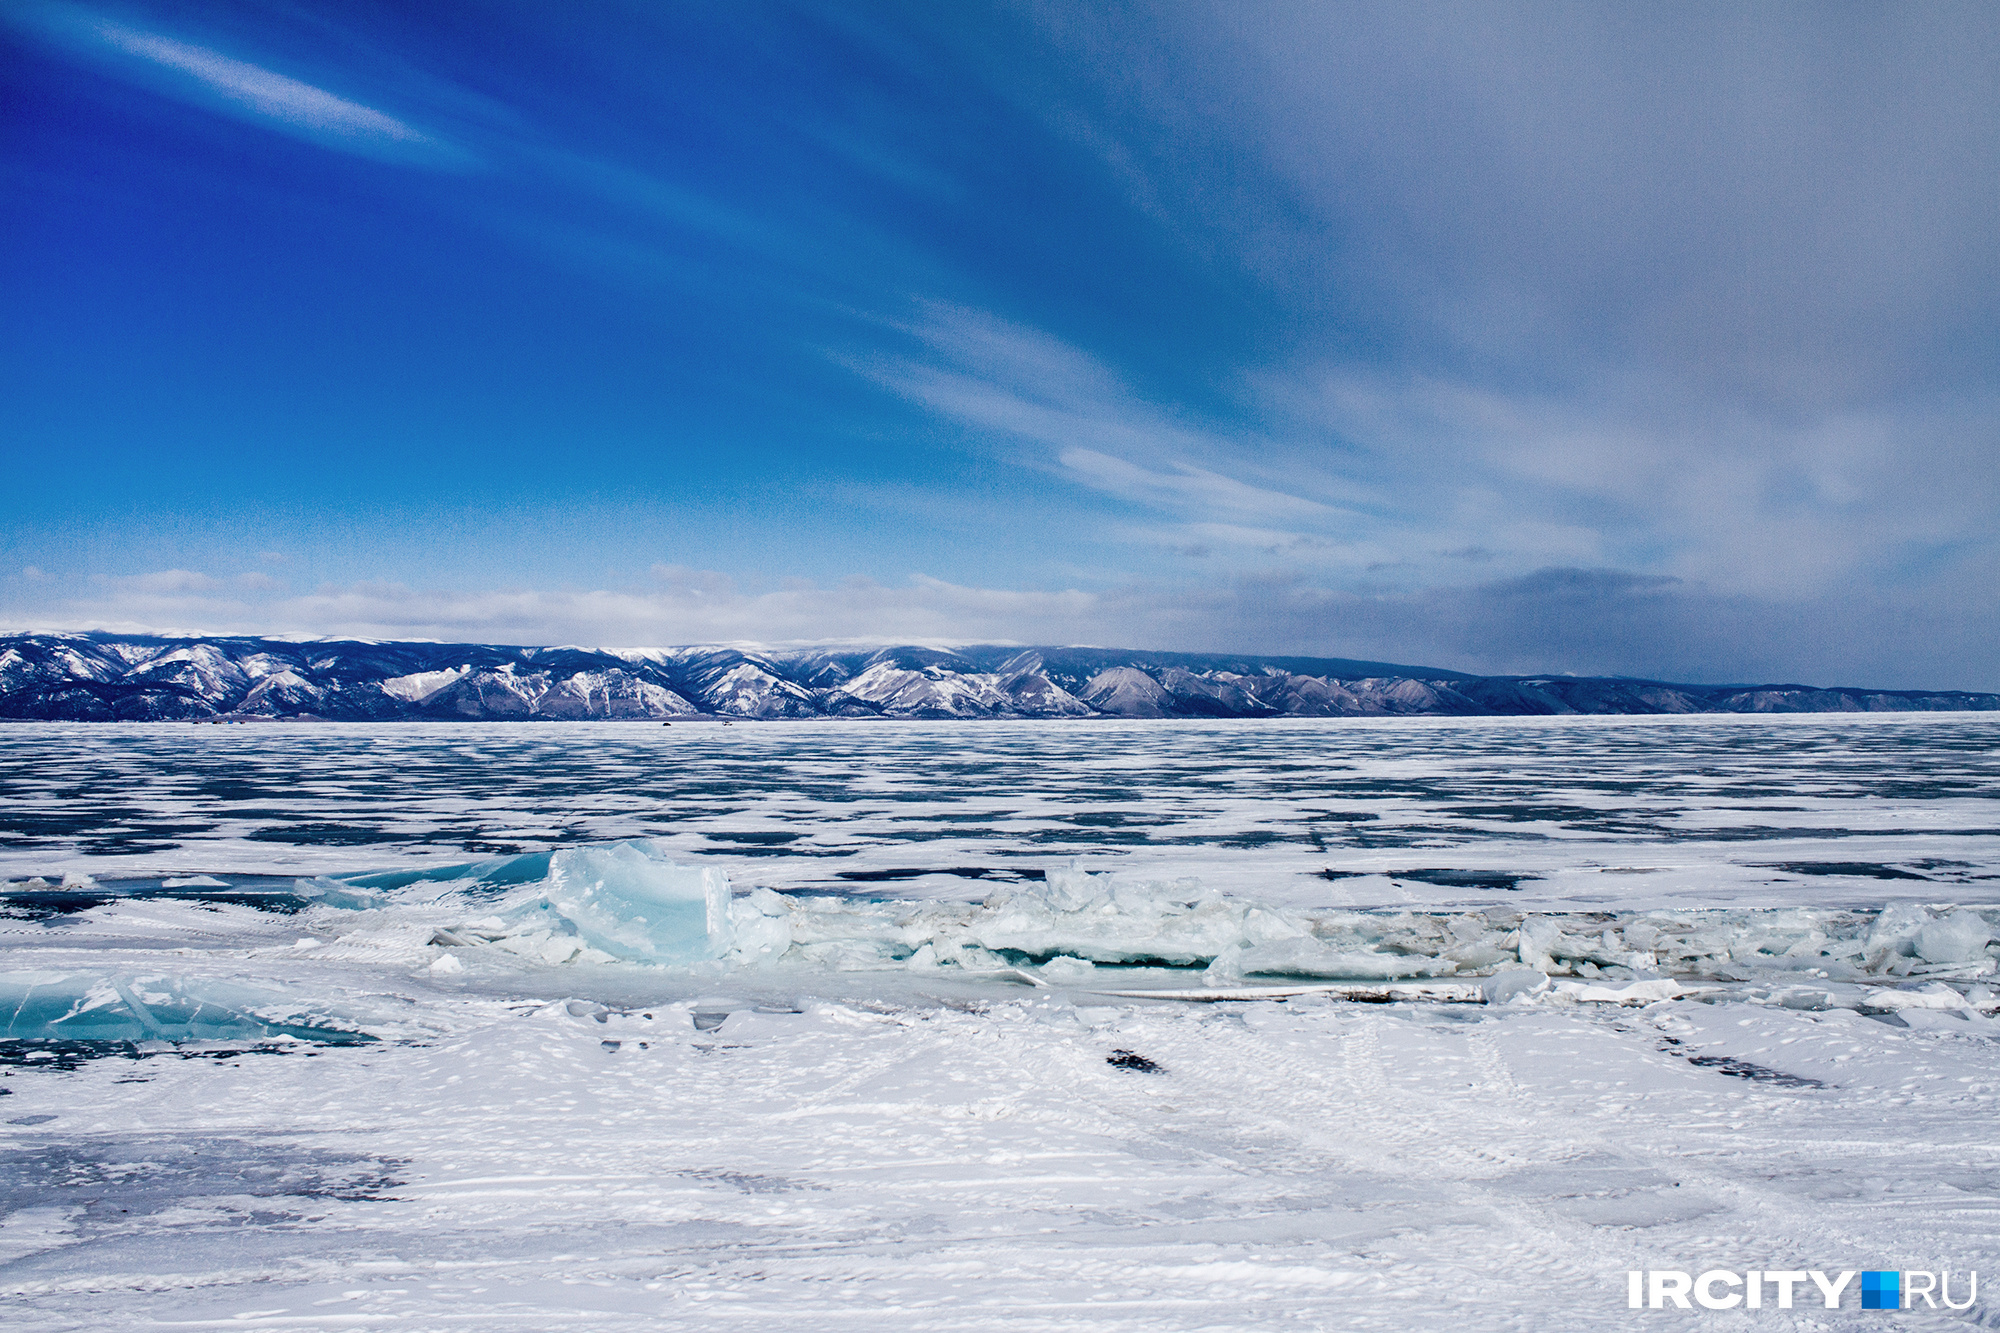 Иркутяне на мотовездеходах объедут Байкал по льду за 8 дней